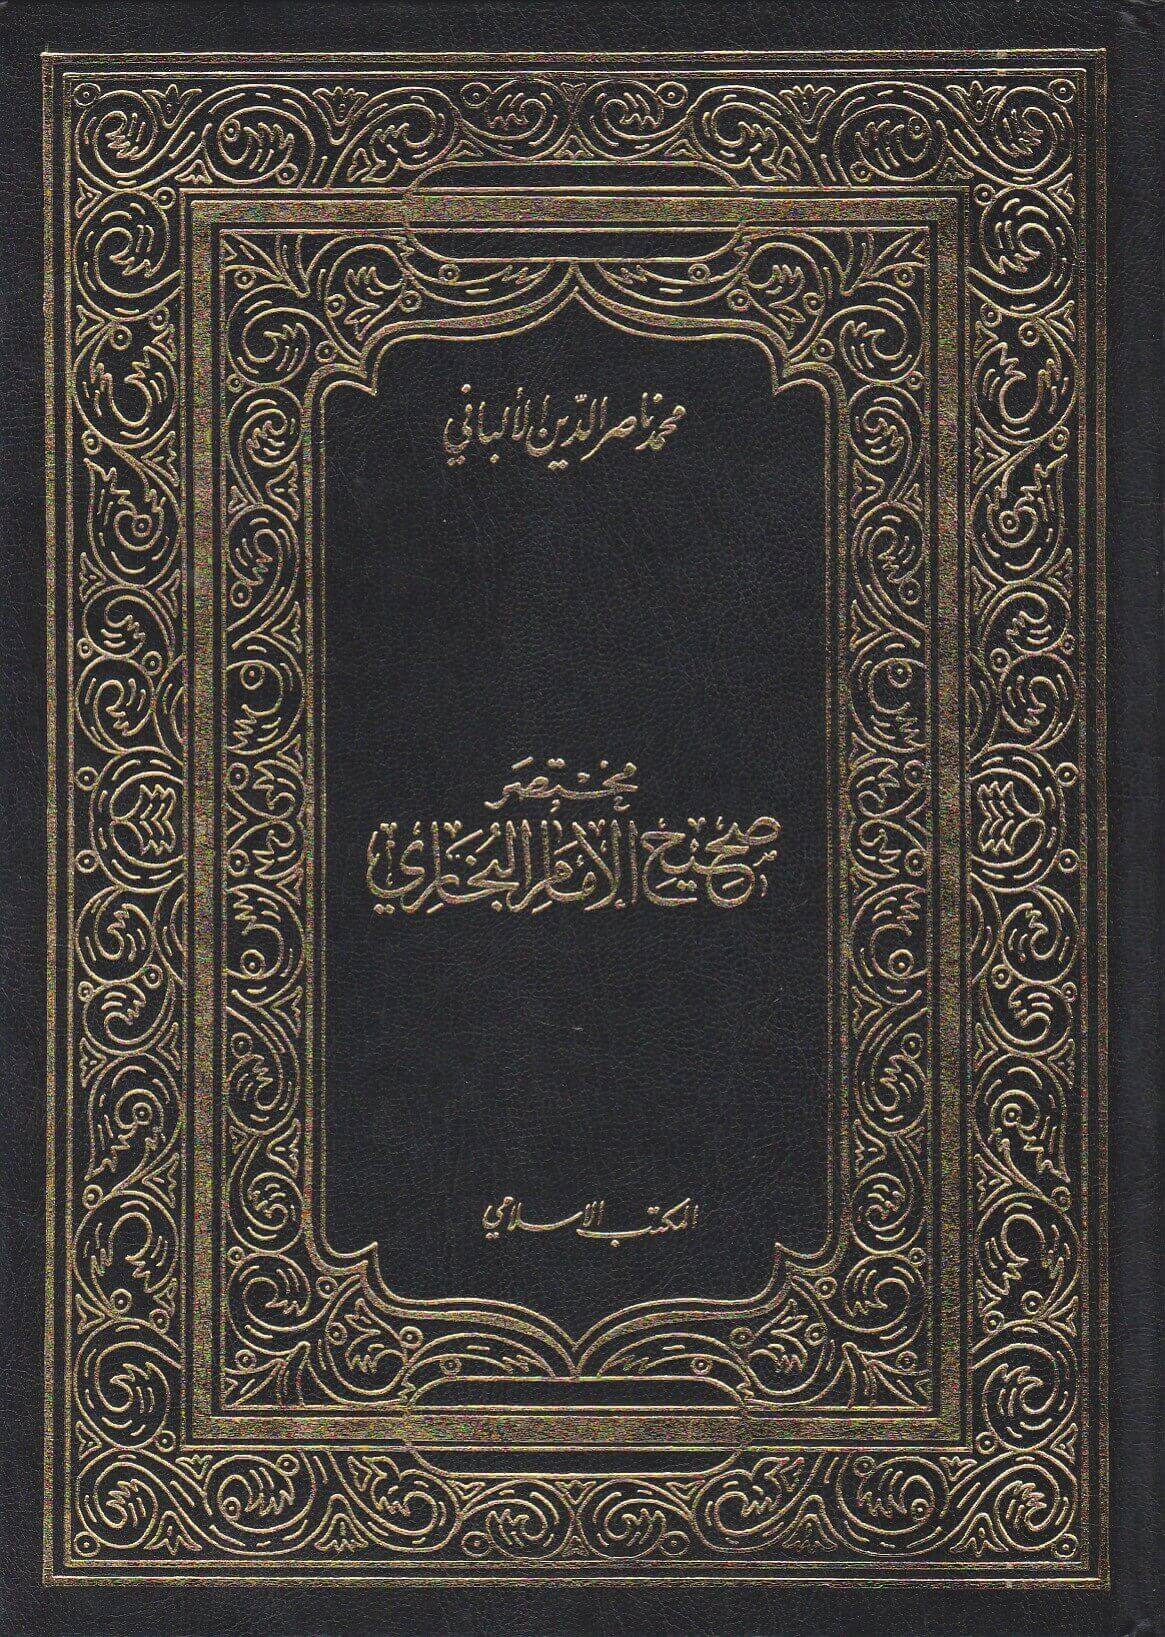 Mukhtasar Sahih Al Bukhari (Albani)  مختصر صحيح البخاري